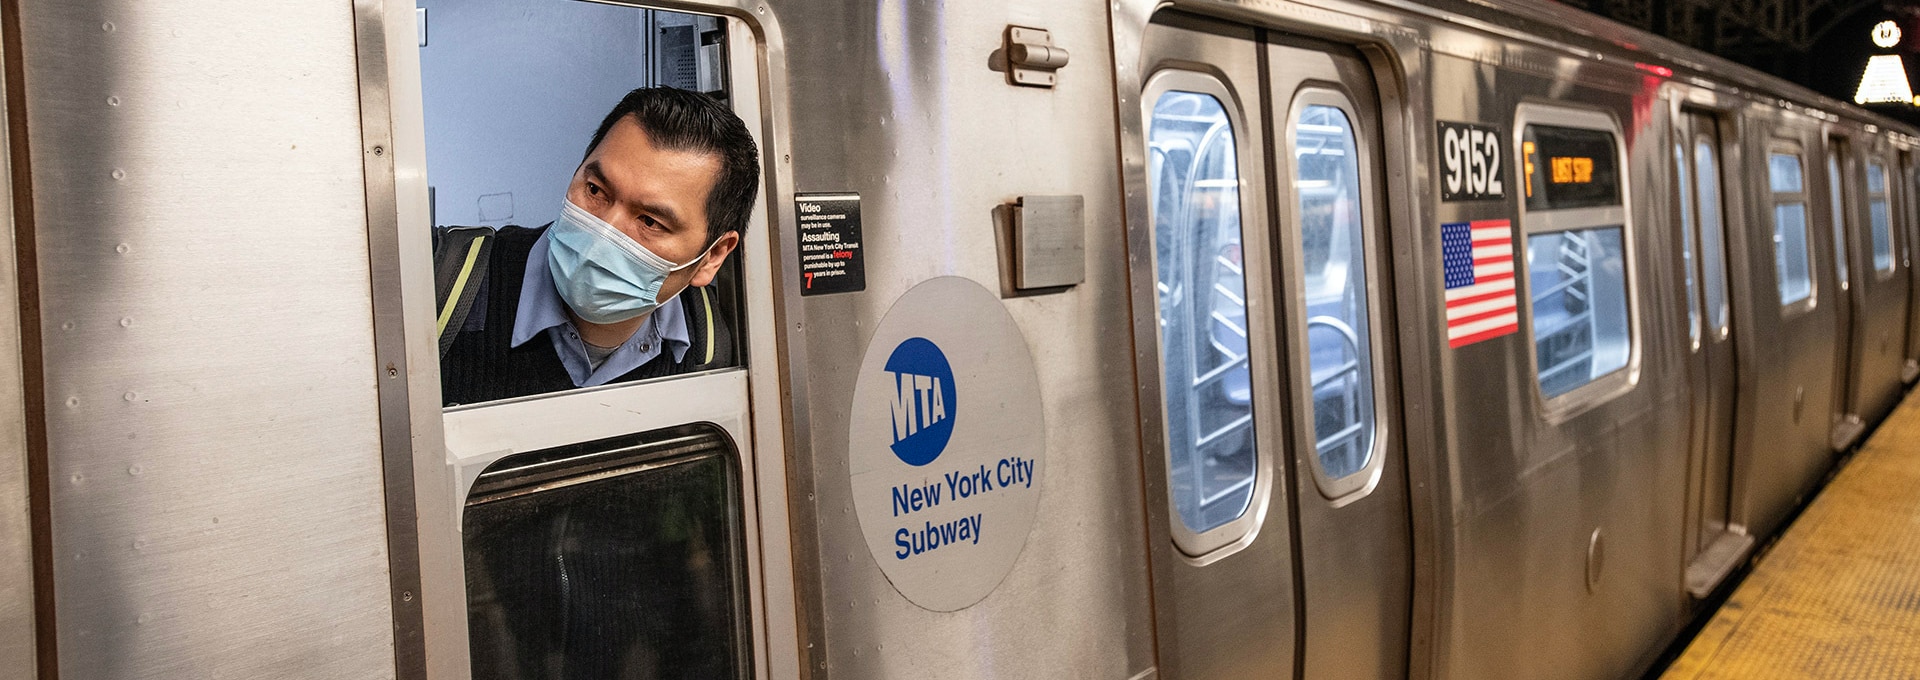 Subway train operator looking ahead